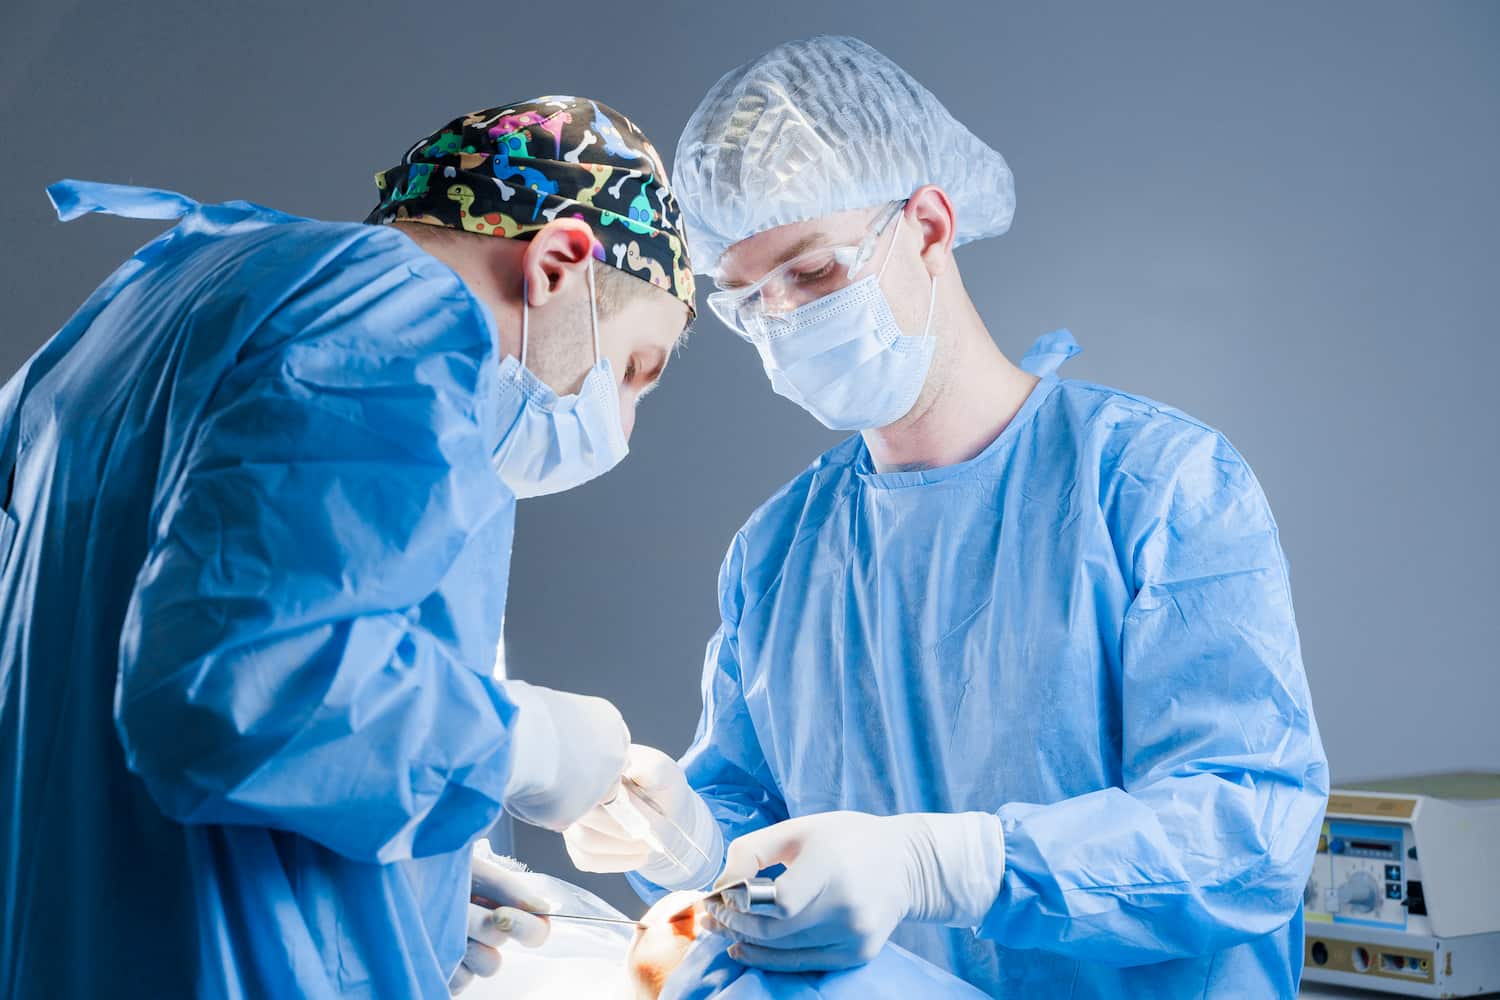 Turkiye bichectomy procedure